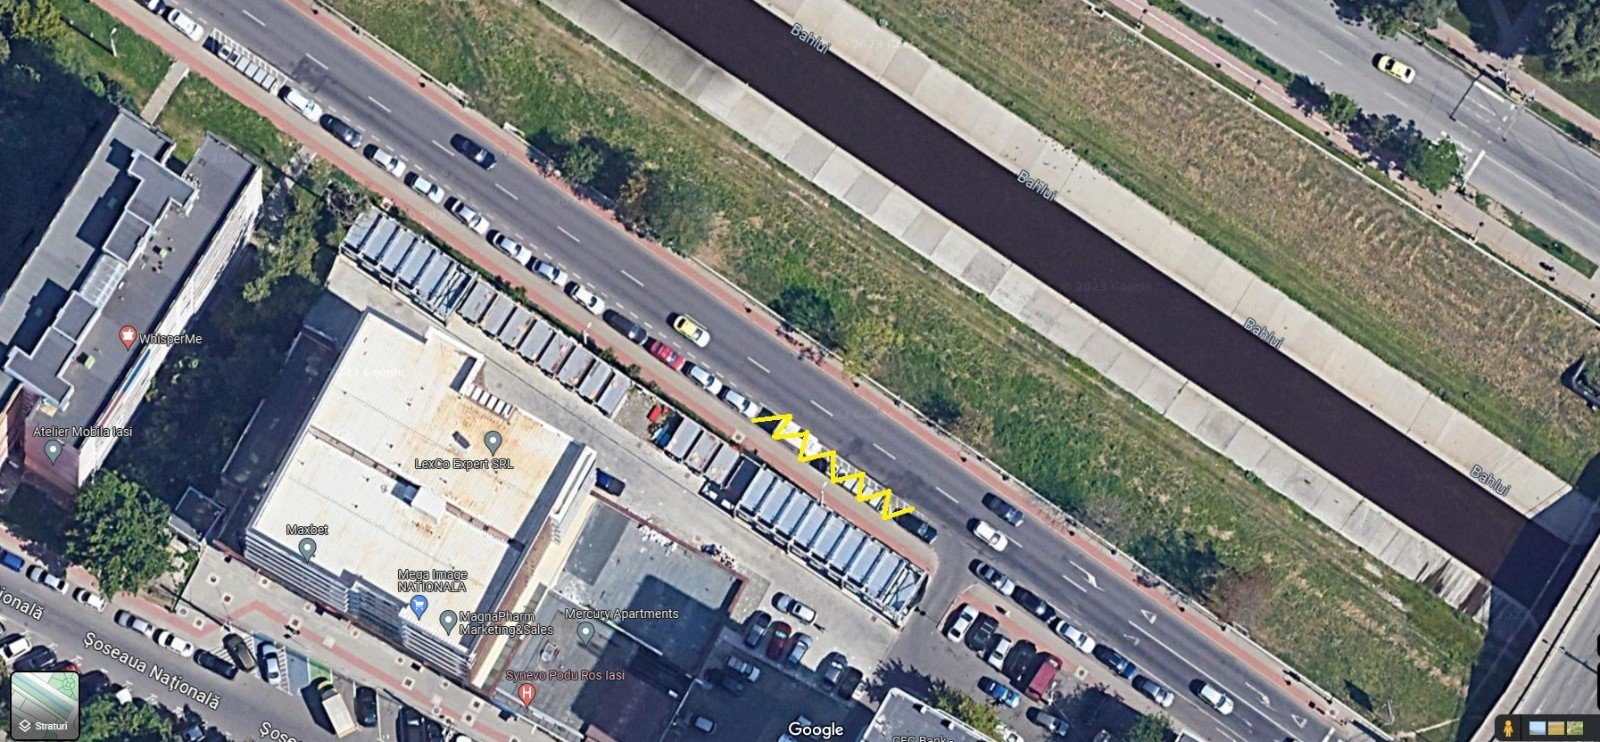  O nouă staţie de autobuz a fost amenajată în zona Podu-Roş